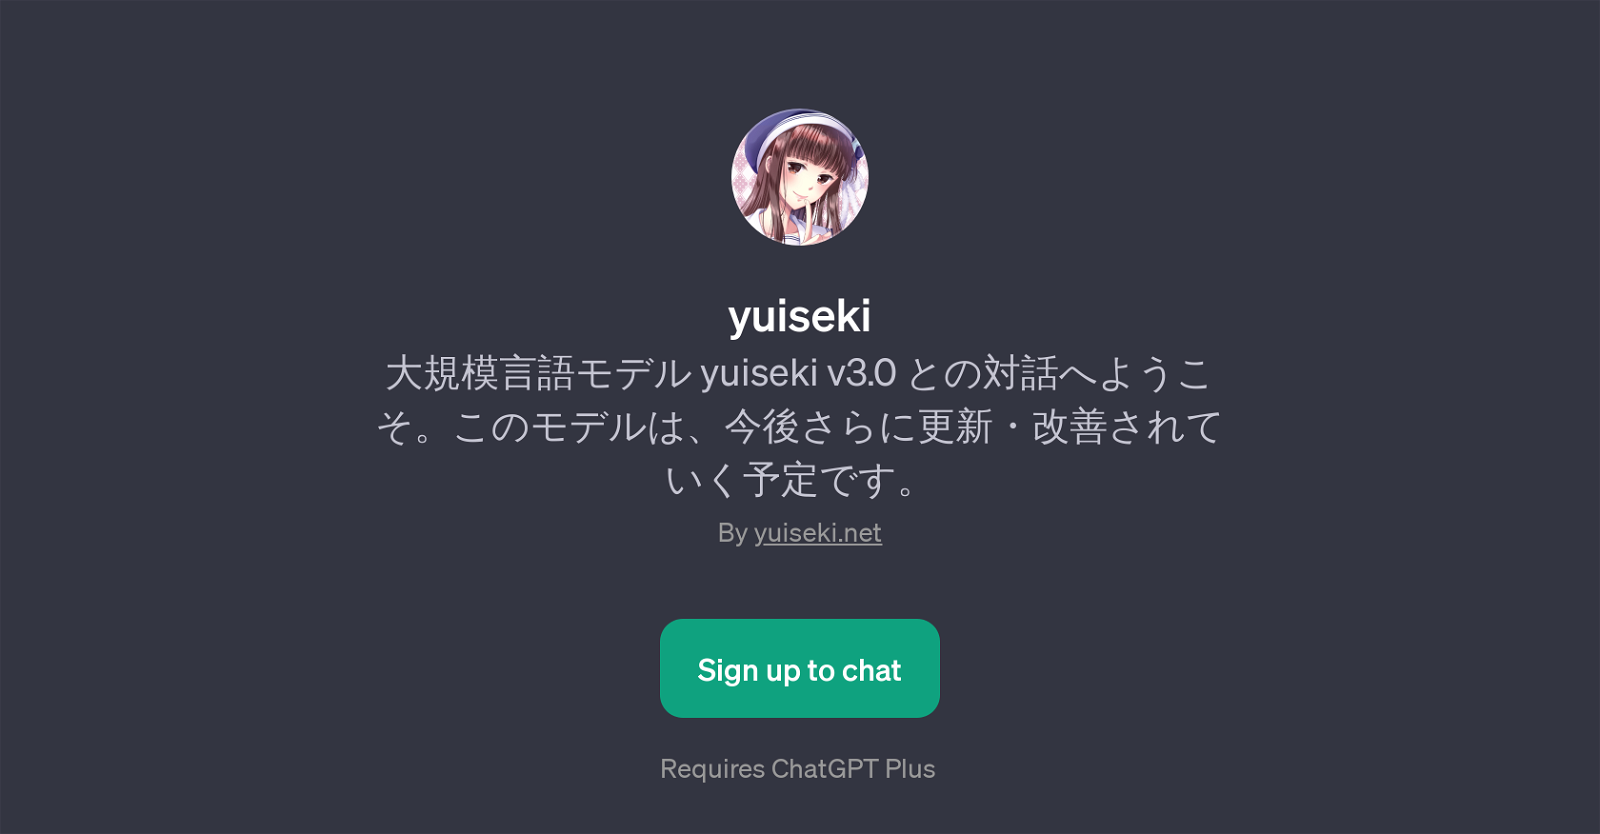 yuiseki v3.0 website